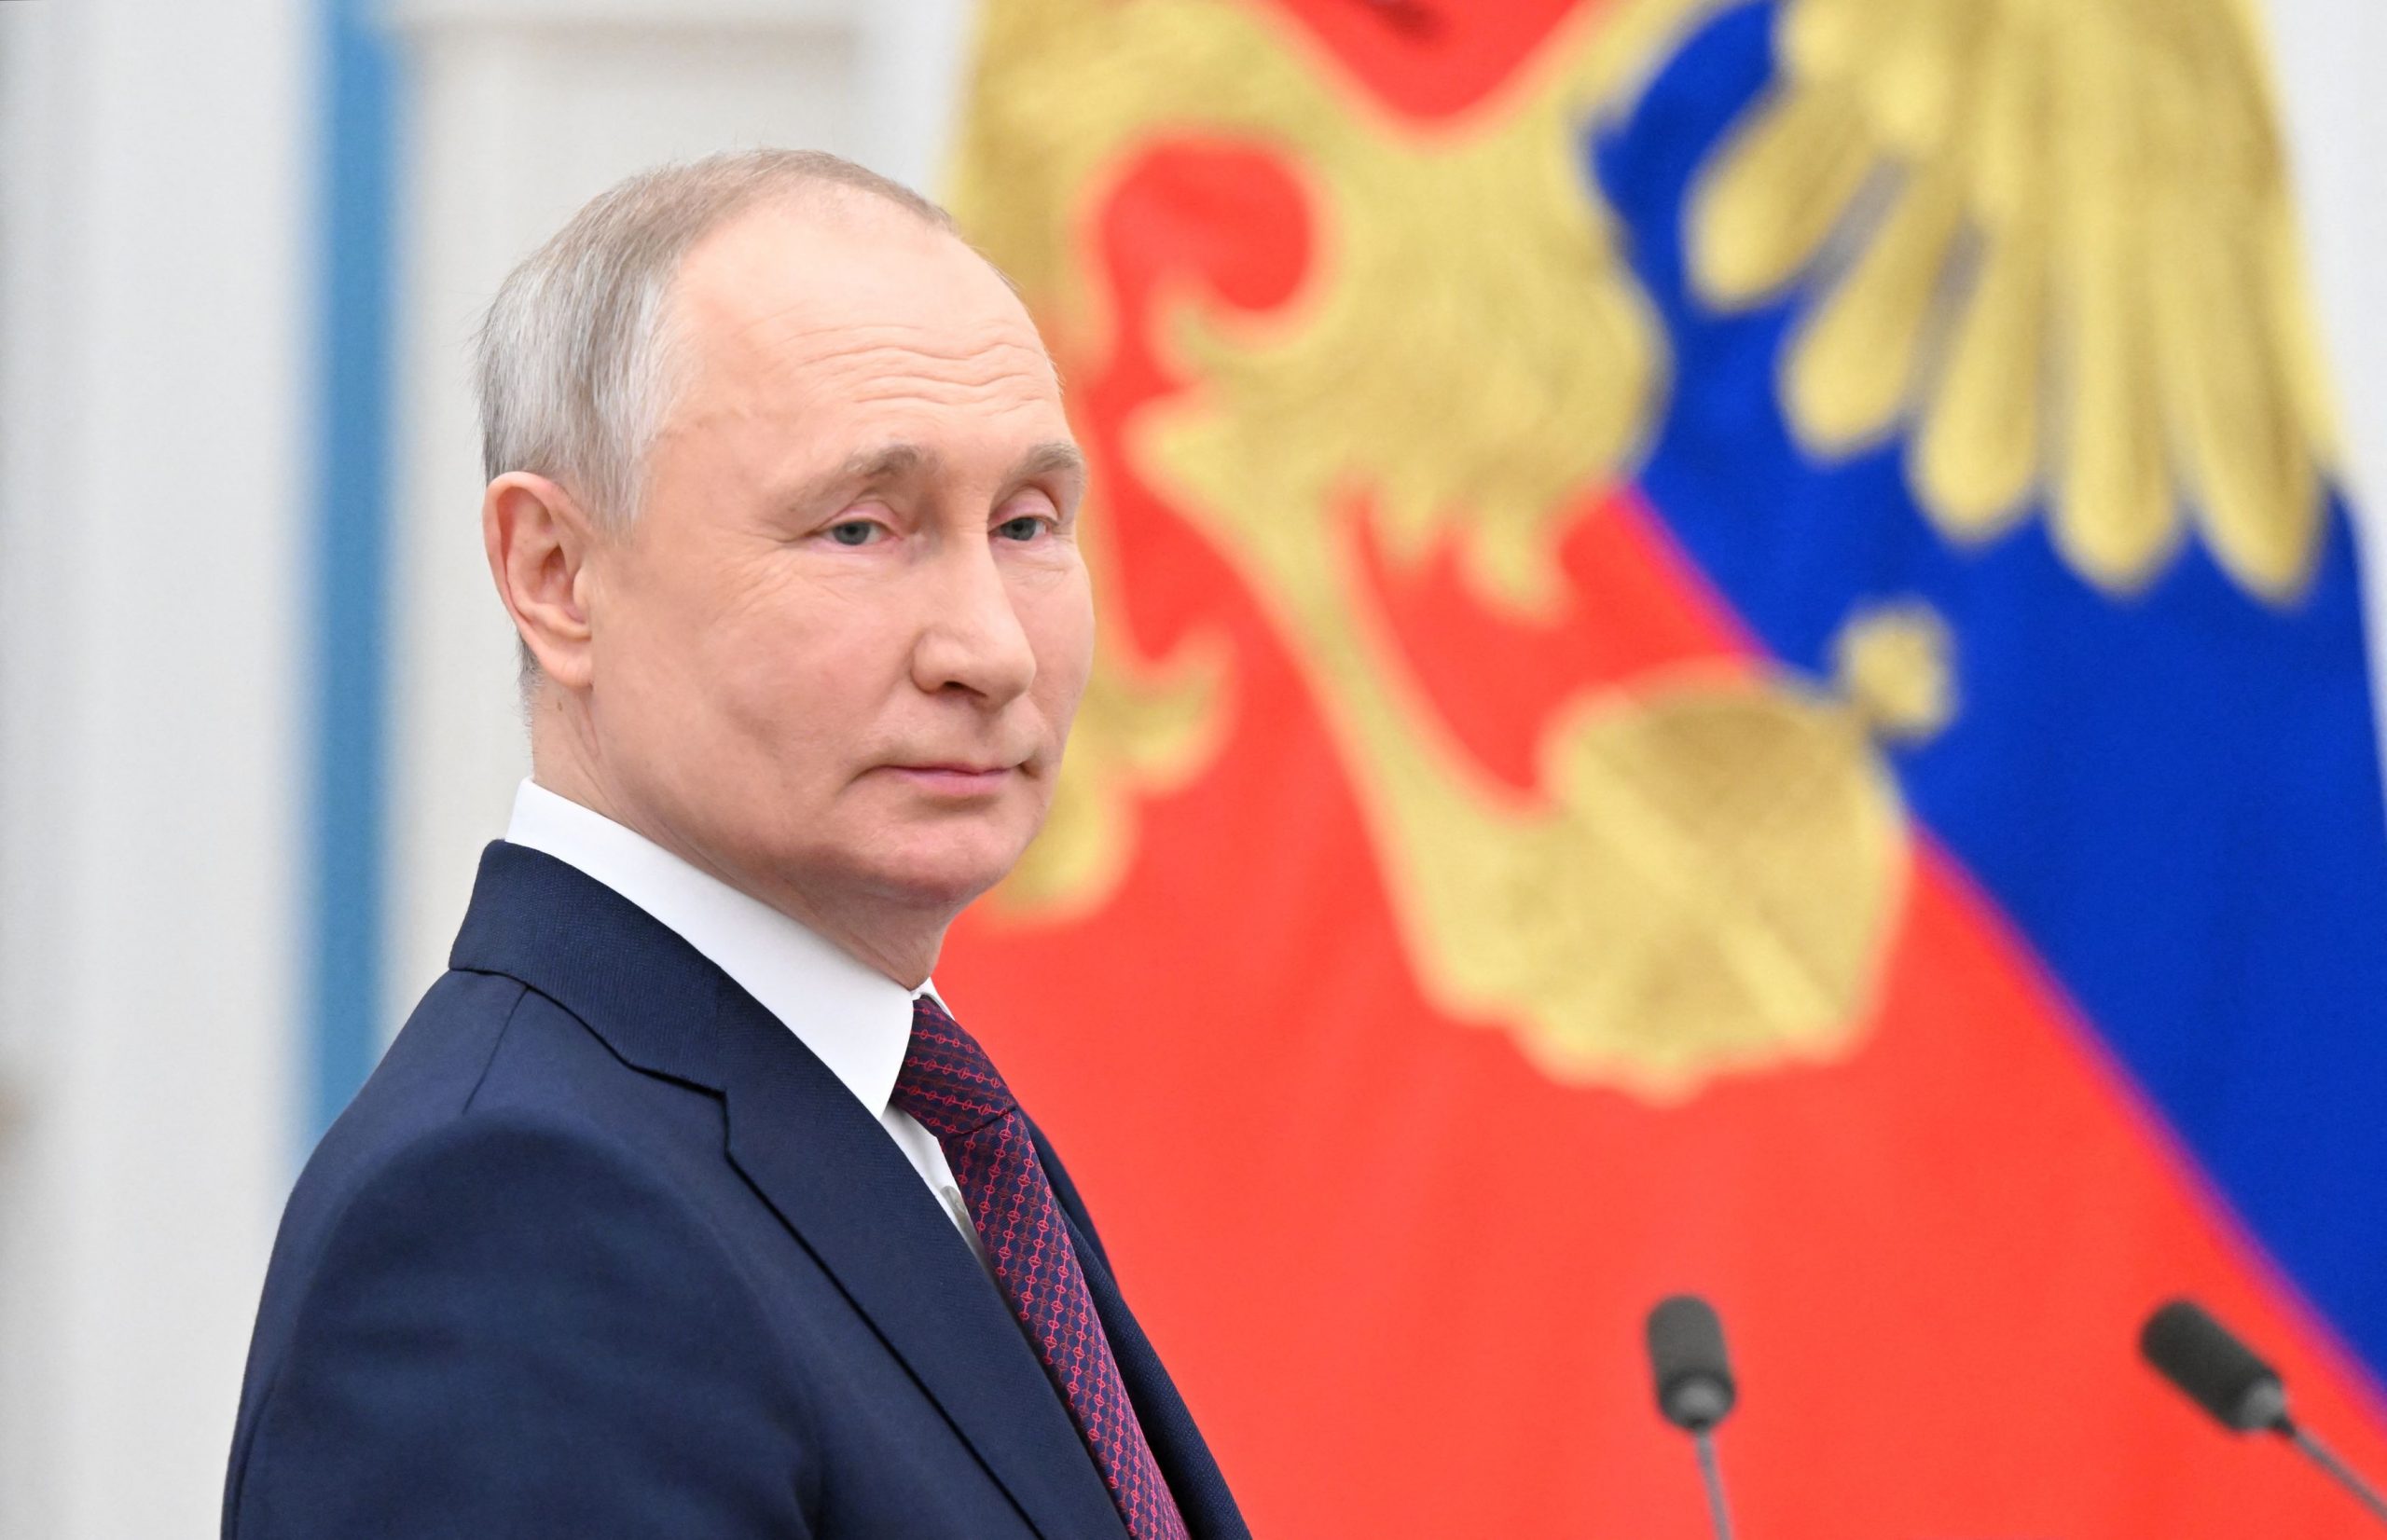 Ρωσία: Πώς ο Πούτιν έχει πείσει όλο τον κόσμο ότι οι δυτικές κυρώσεις δεν αποδίδουν καρπούς